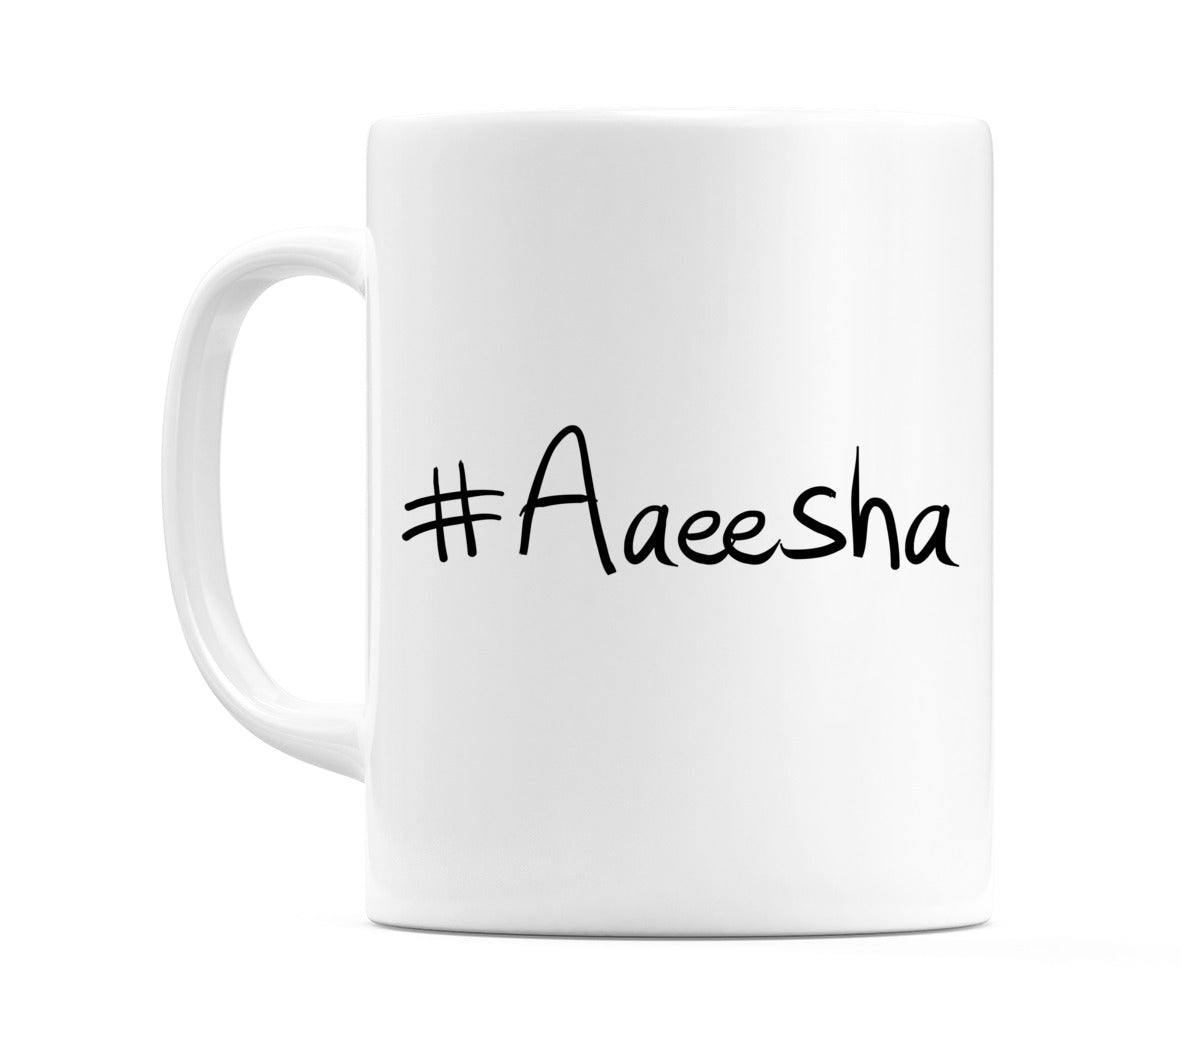 #Aaeesha Mug